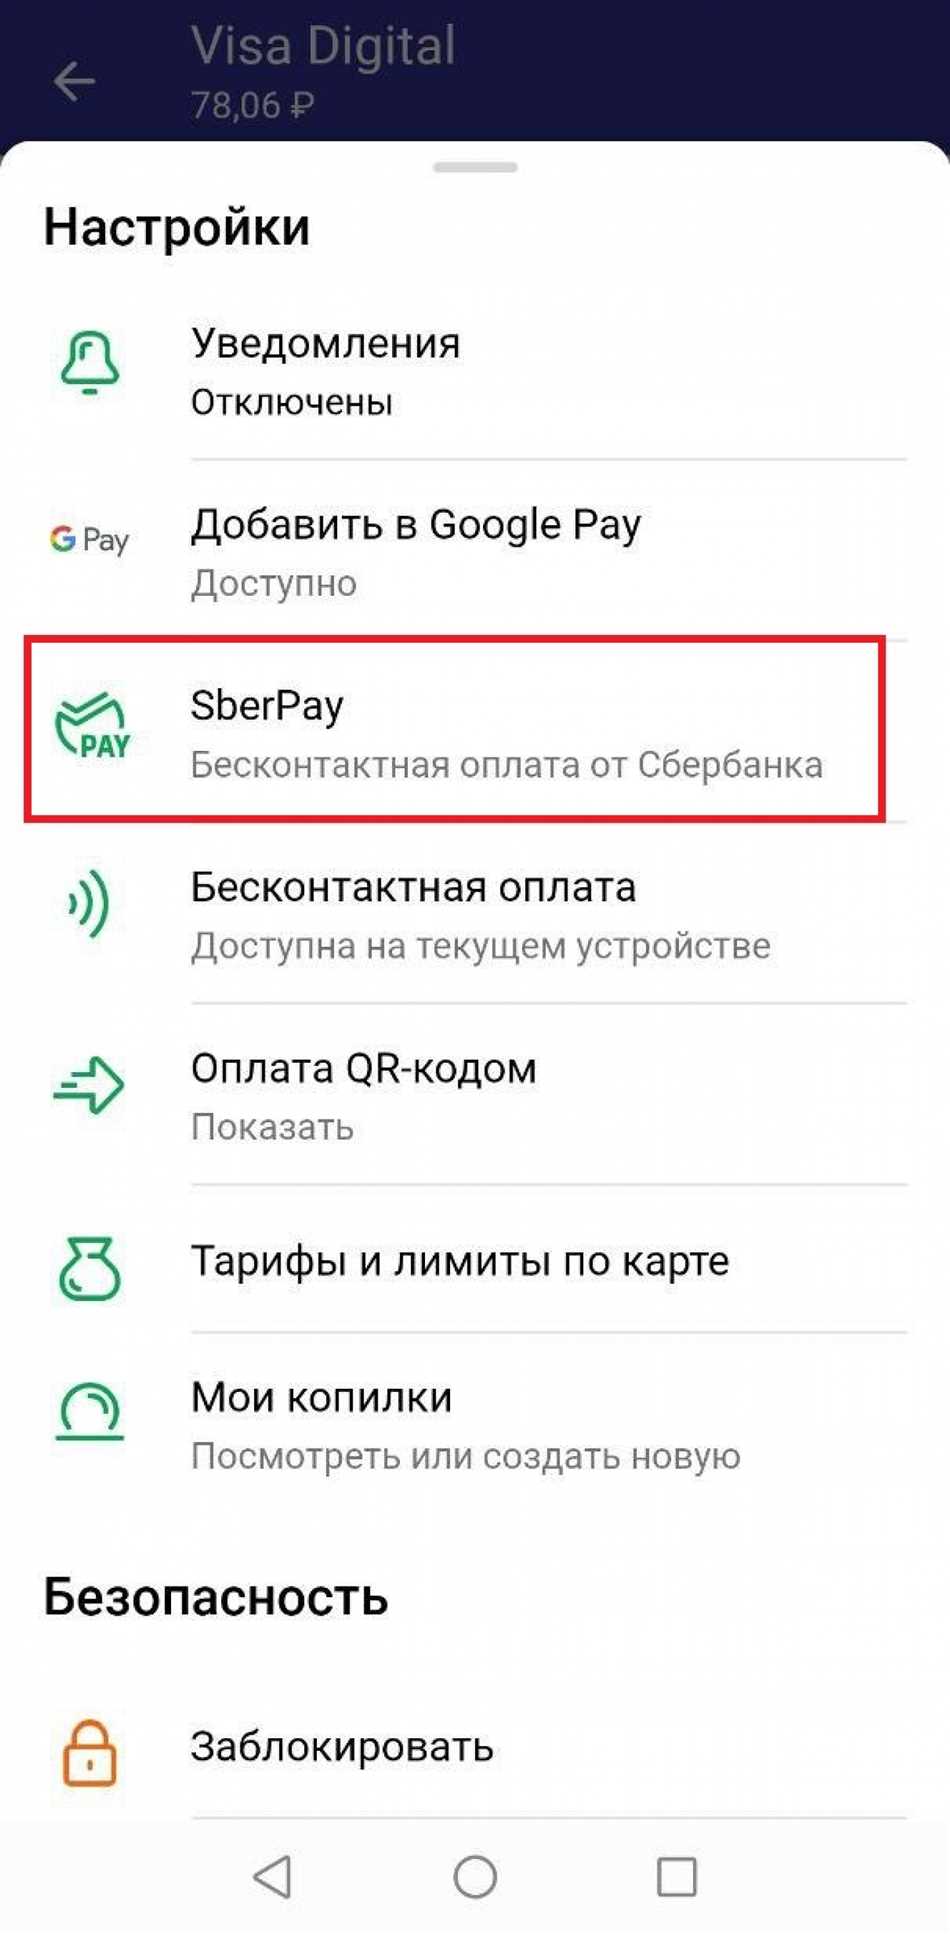 Что такое Sberpay и как им оплатить?